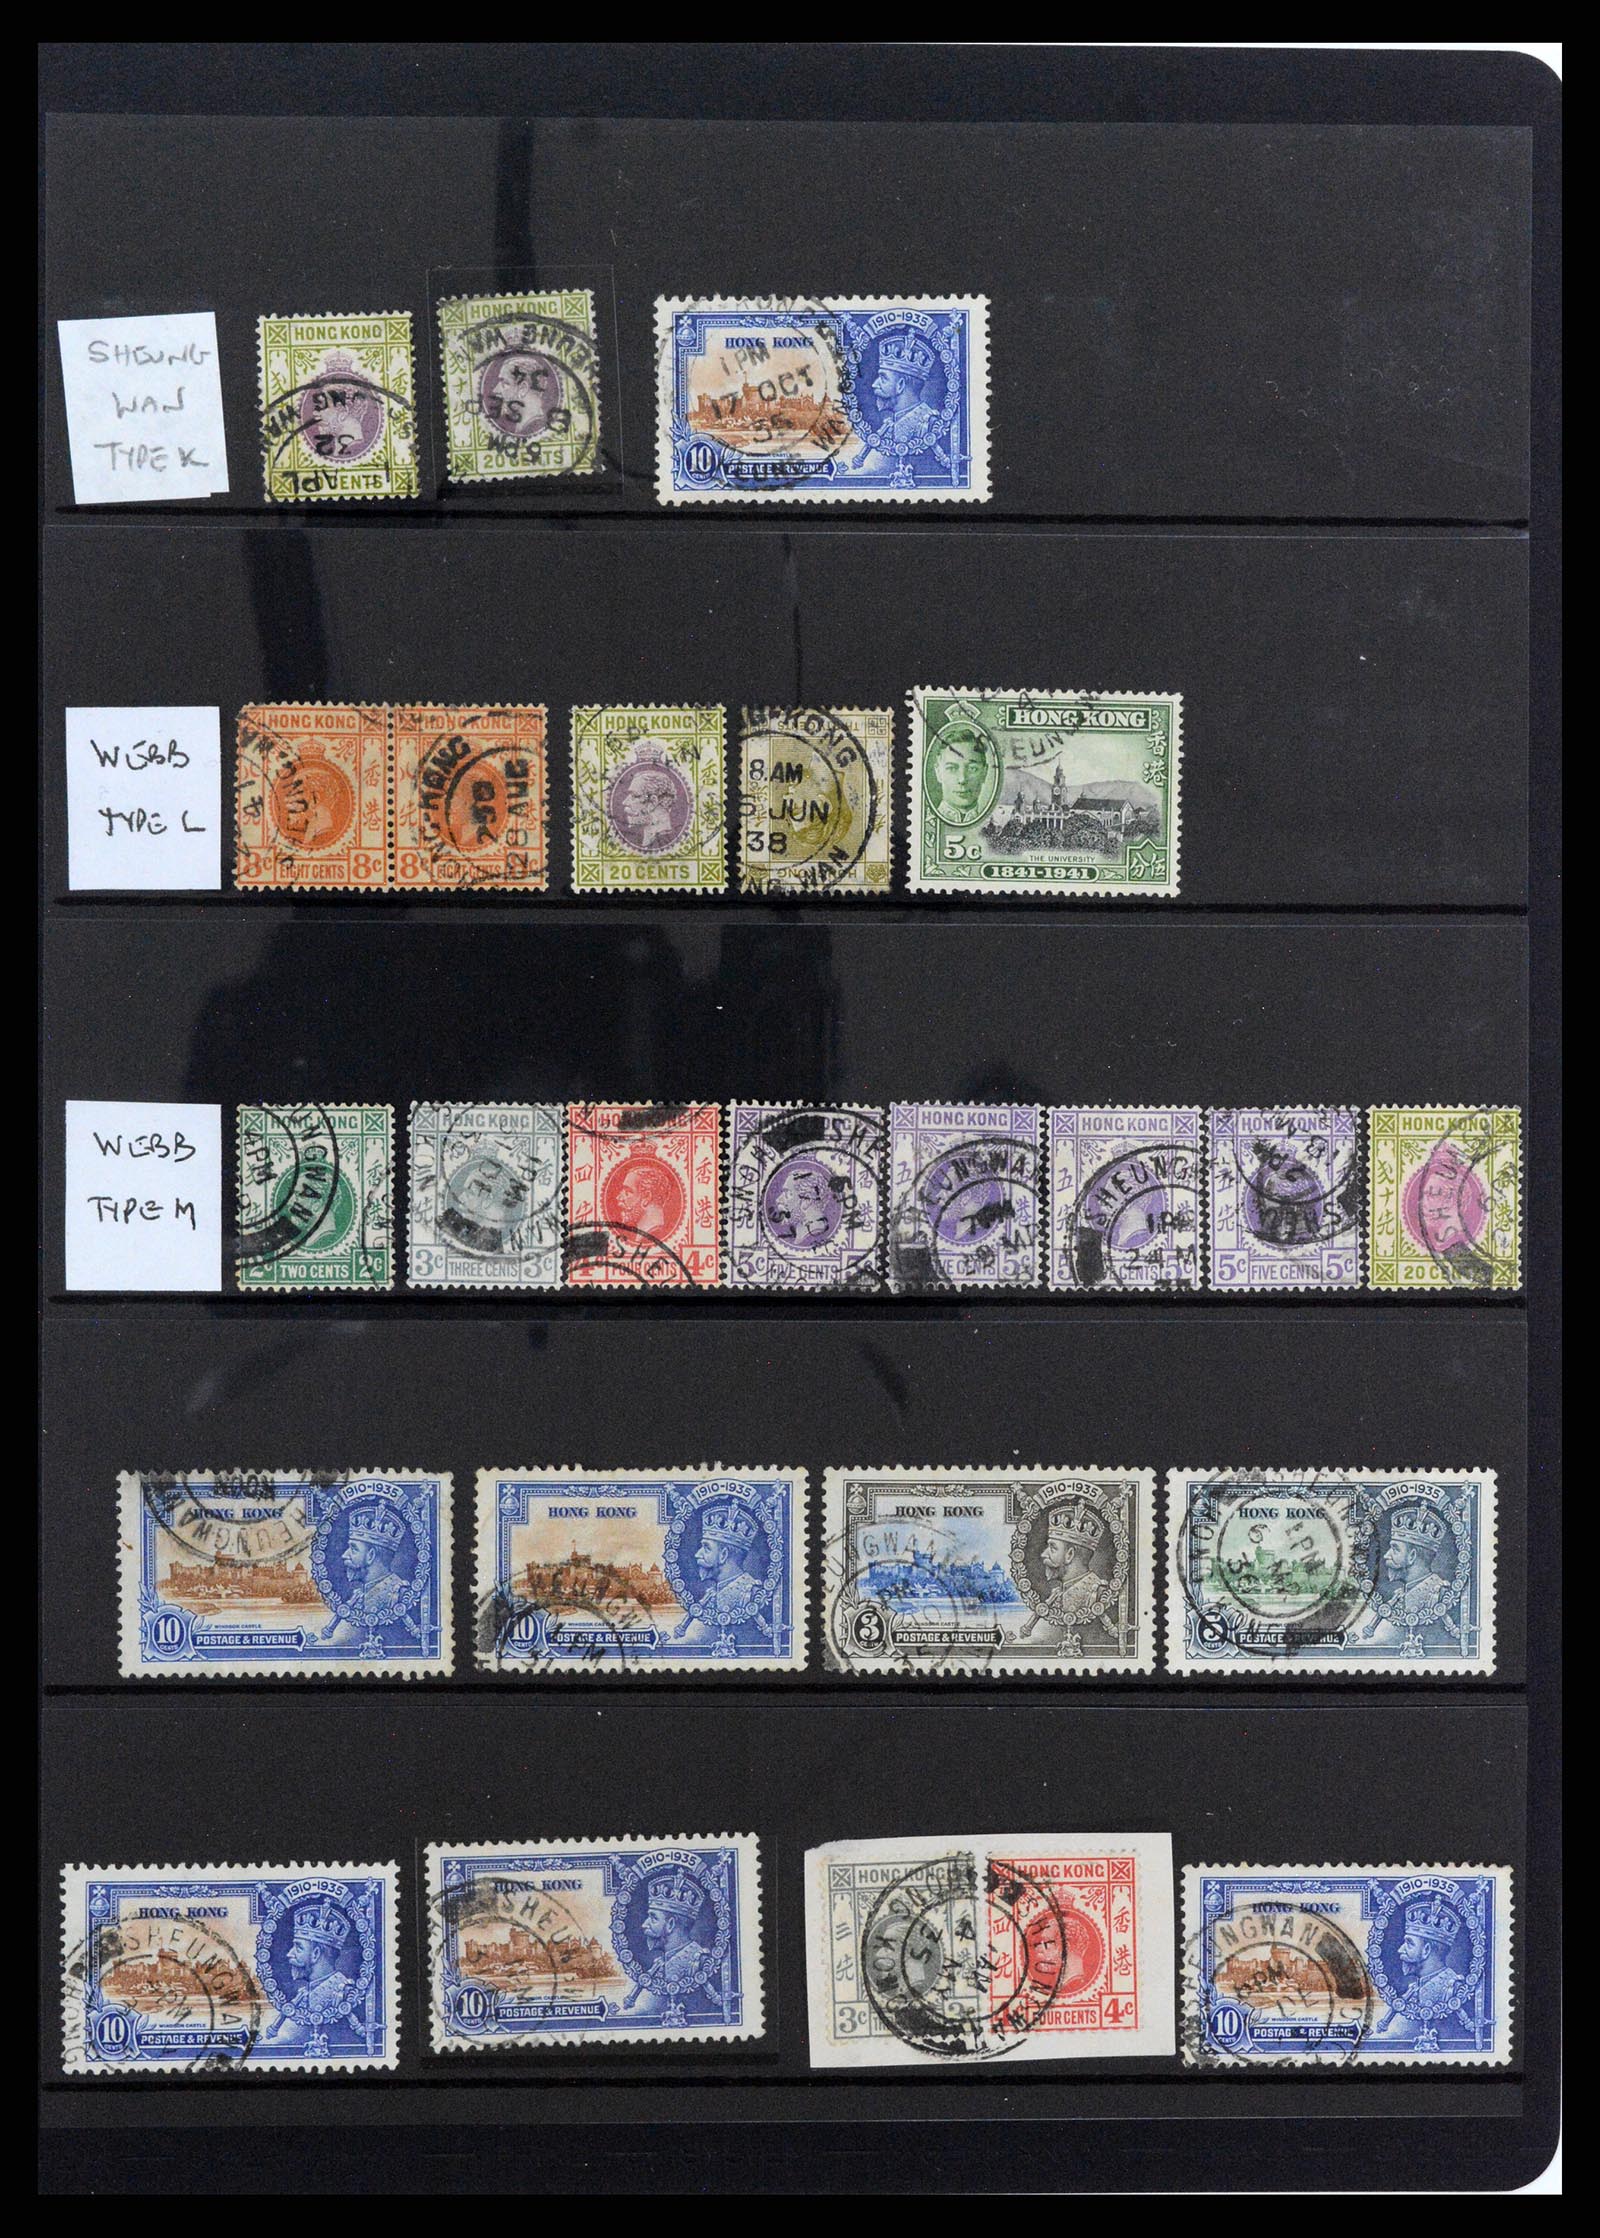 37358 056 - Stamp collection 37358 Hong Kong 1861-1997.